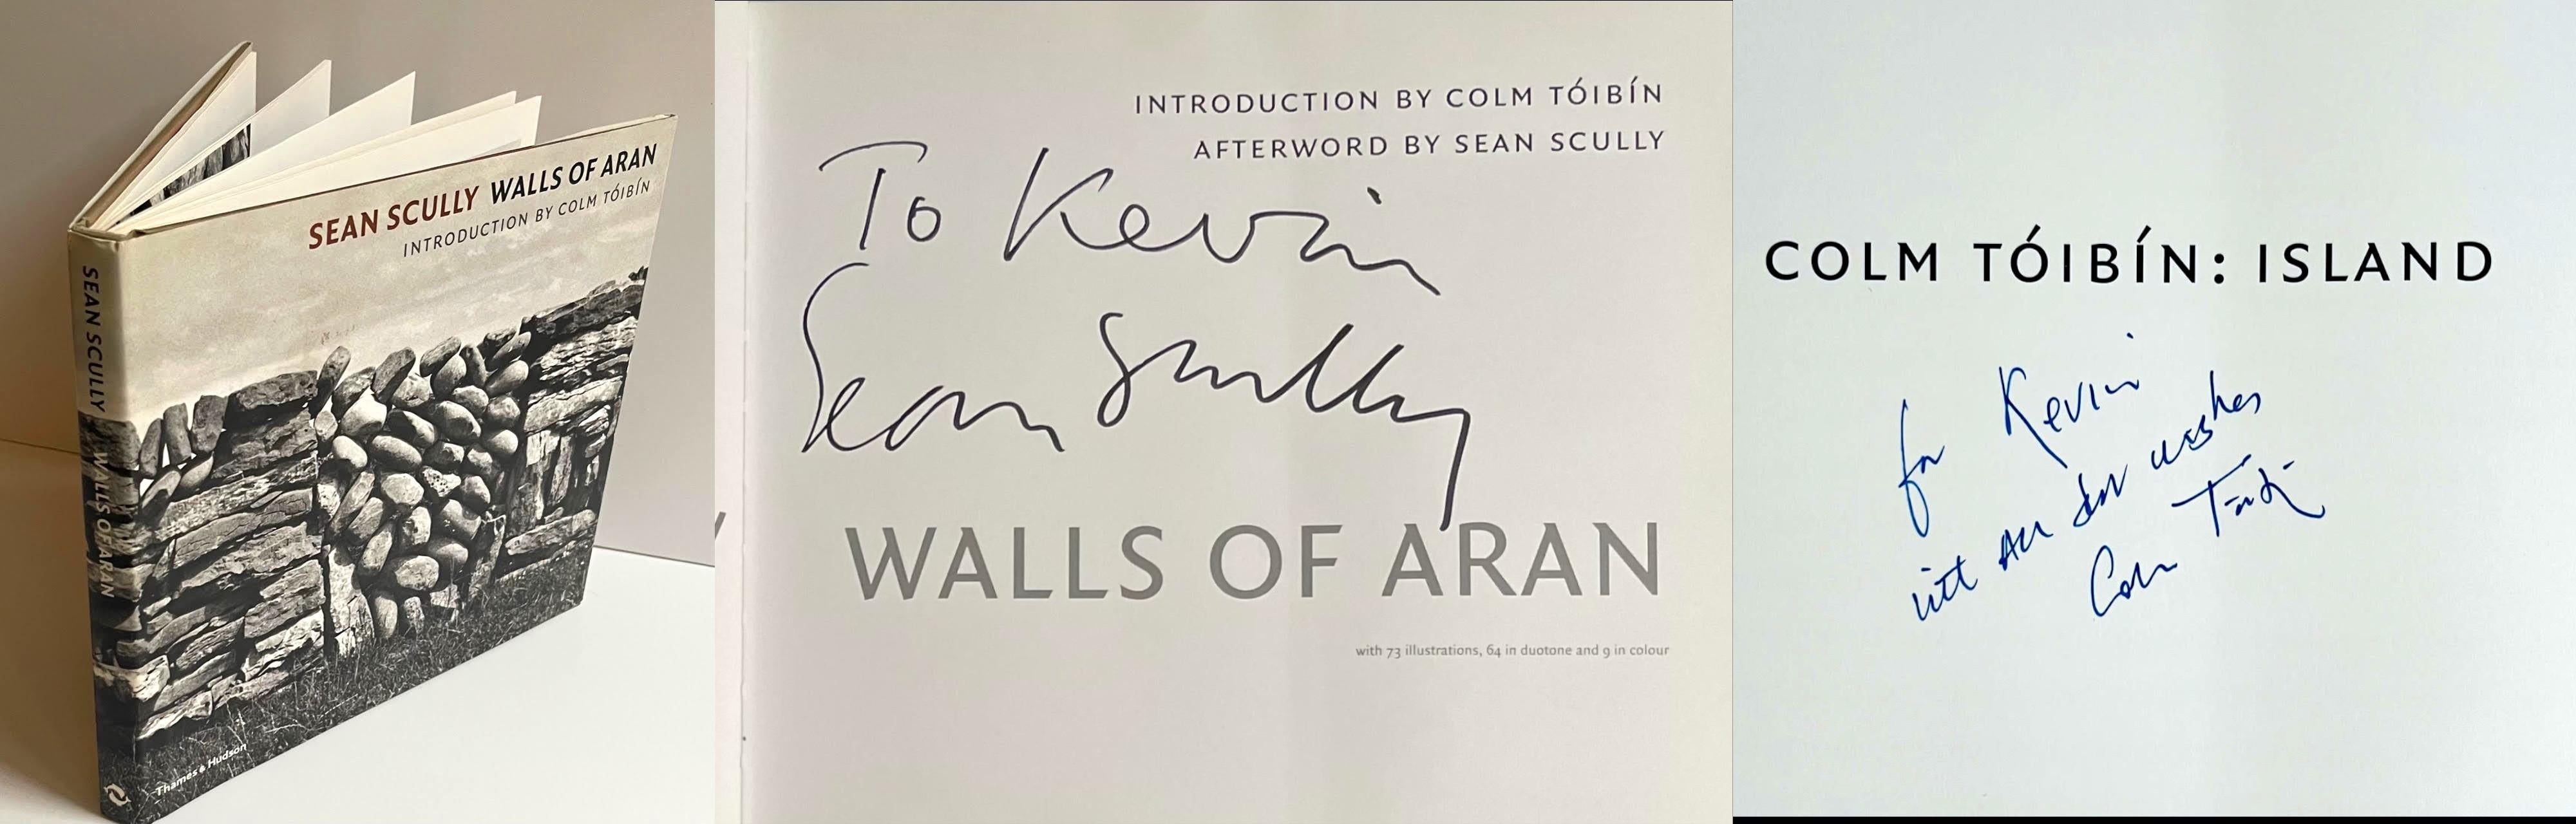 Sean Scully
Walls of Aran (signé et inscrit à la main par les DEUX Sean Scully et Colm Toibin), 2007
Monographie cartonnée avec jaquette 
Signé et dédicacé personnellement à Kevin par les DEUX Sean Scully et Colm Toibin.
9 1/2 × 10 1/2 × 1